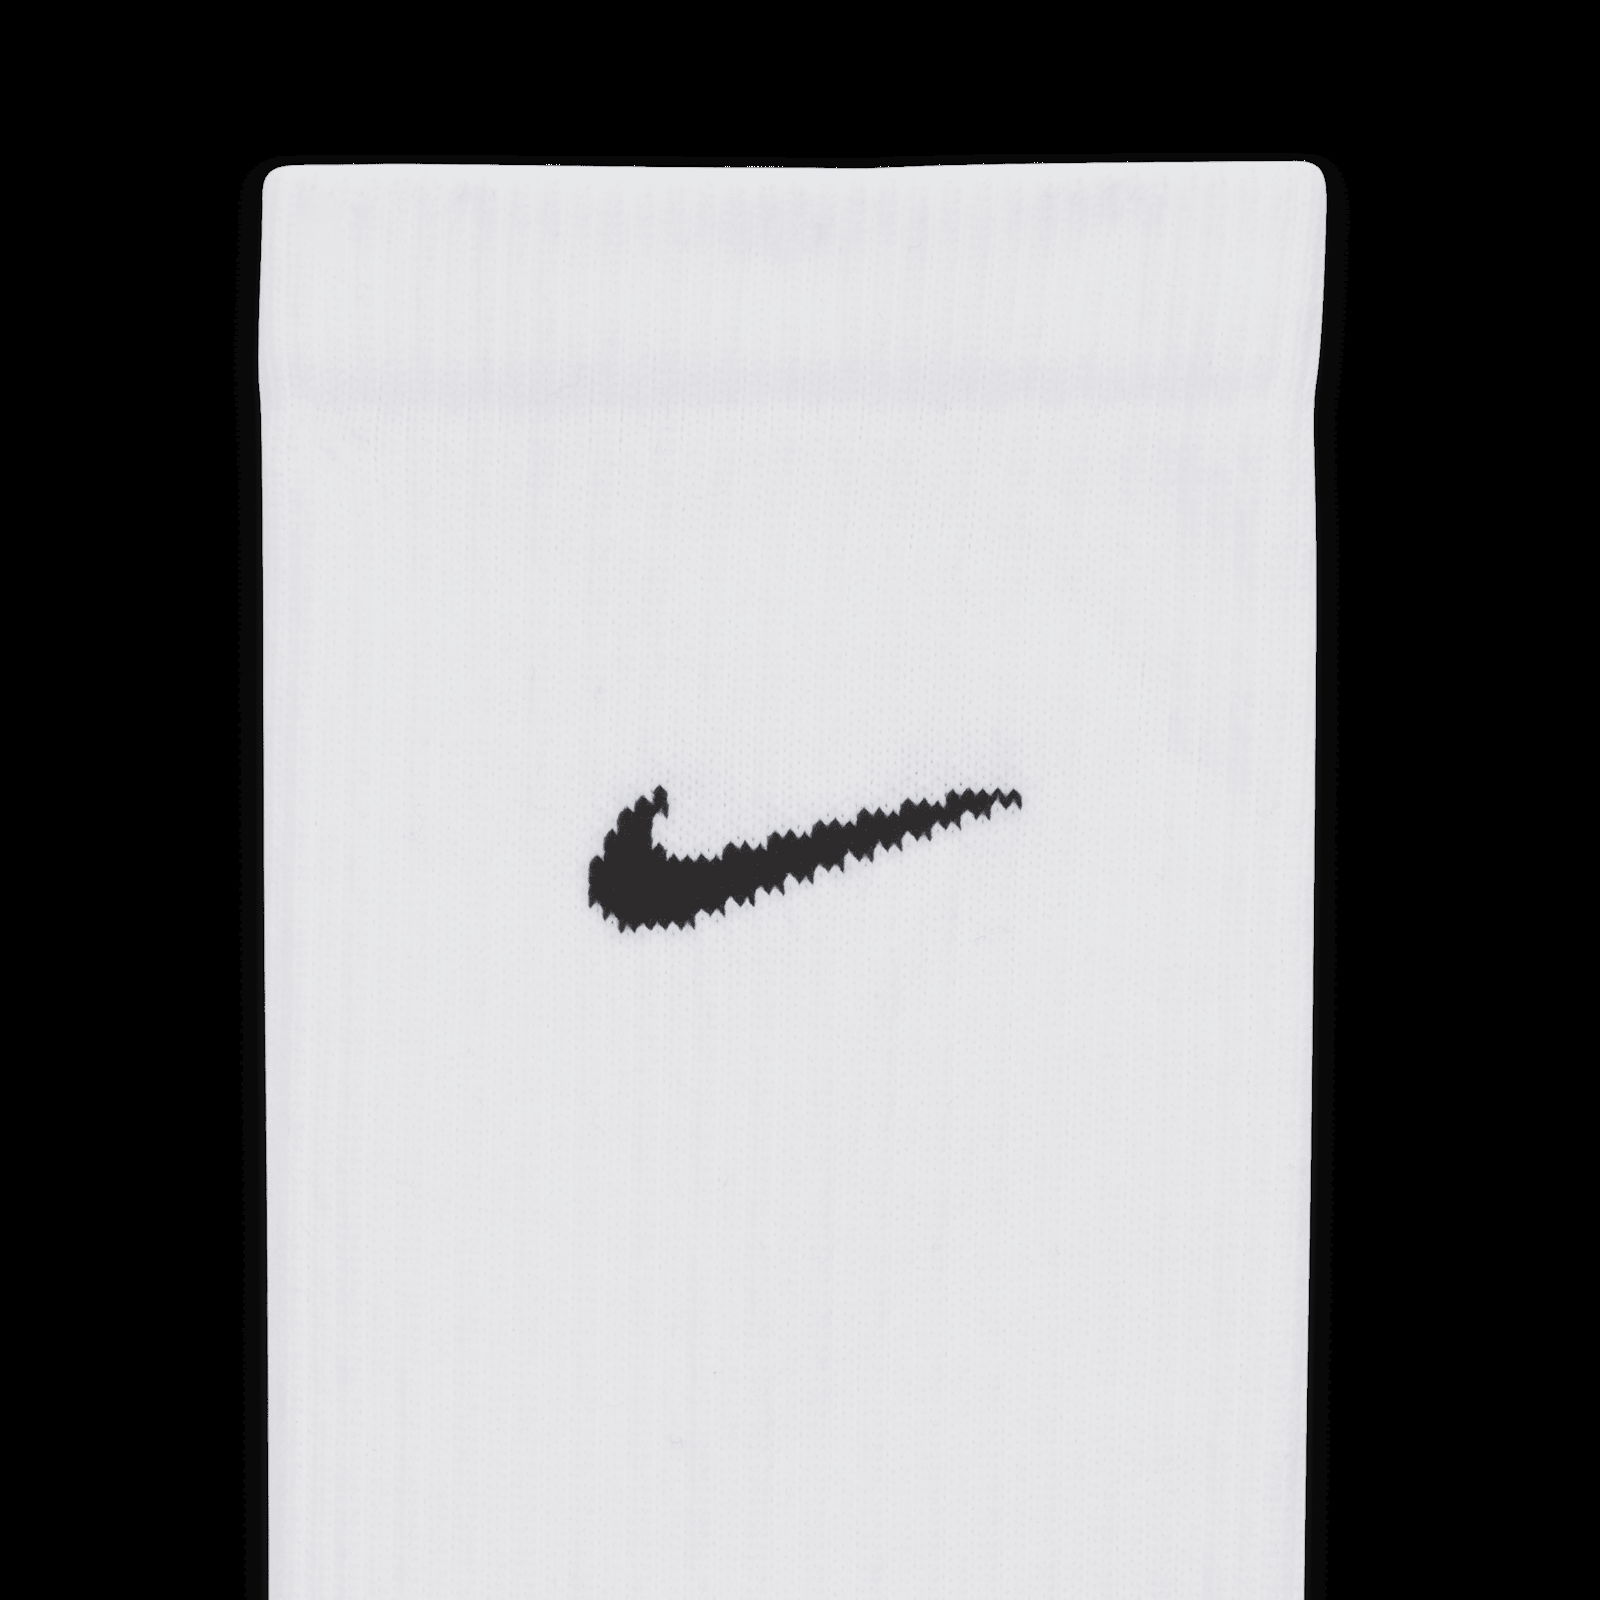 Non Slip Athletic Grip Socks -for Soccer Basketball Running- Adult 4 Pair(2  White+2 Black)